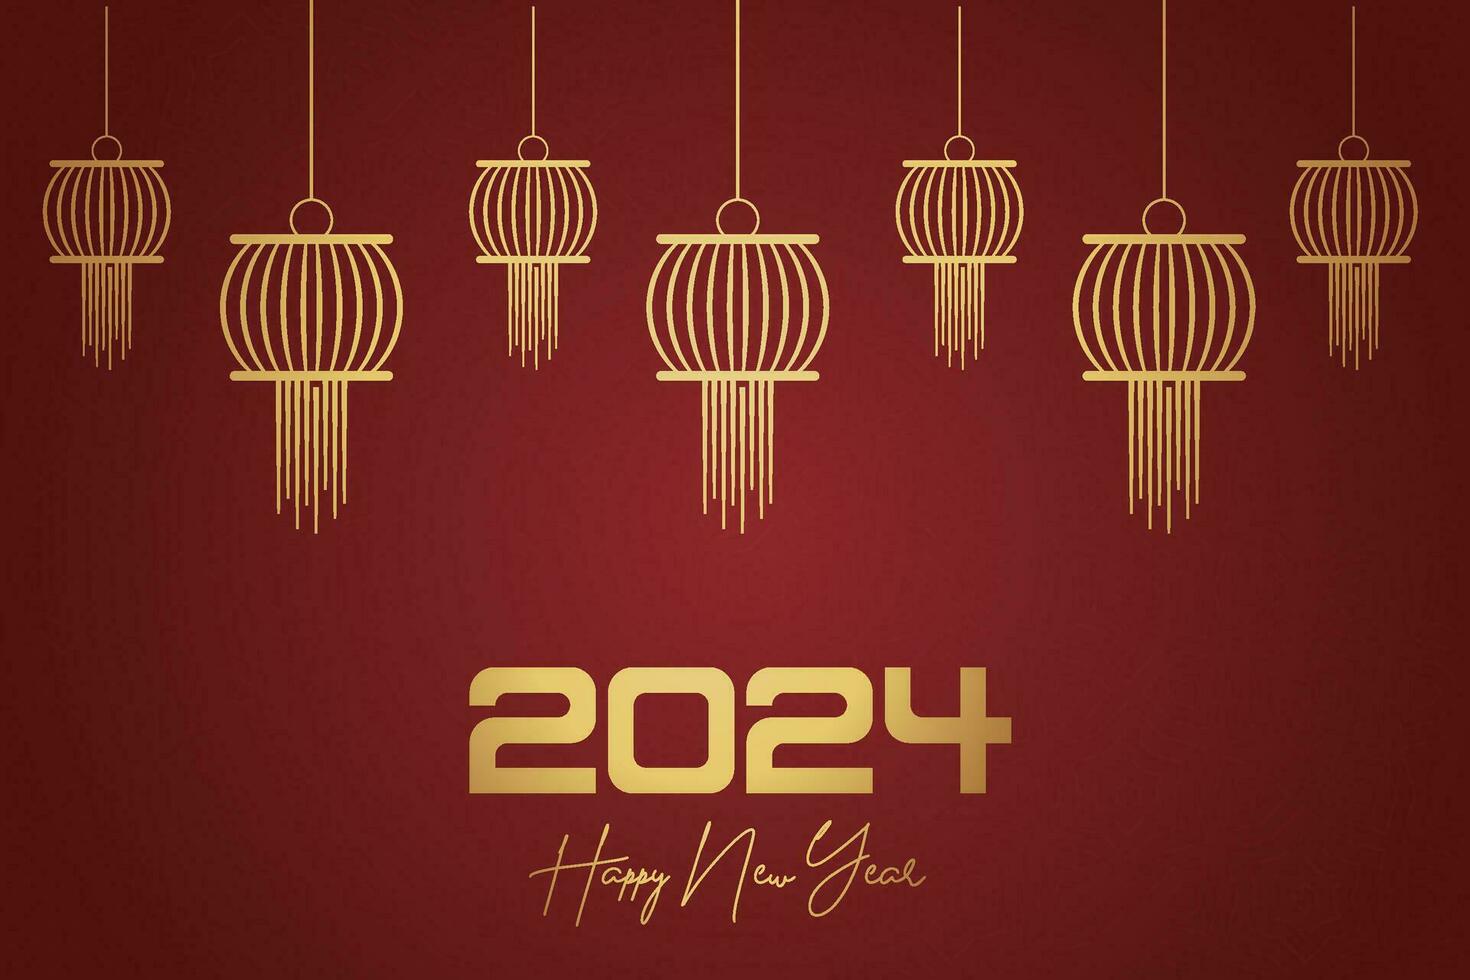 chinês lunar Novo ano festival 2024 celebração, feliz Novo ano fundo decorativo elementos. vetor